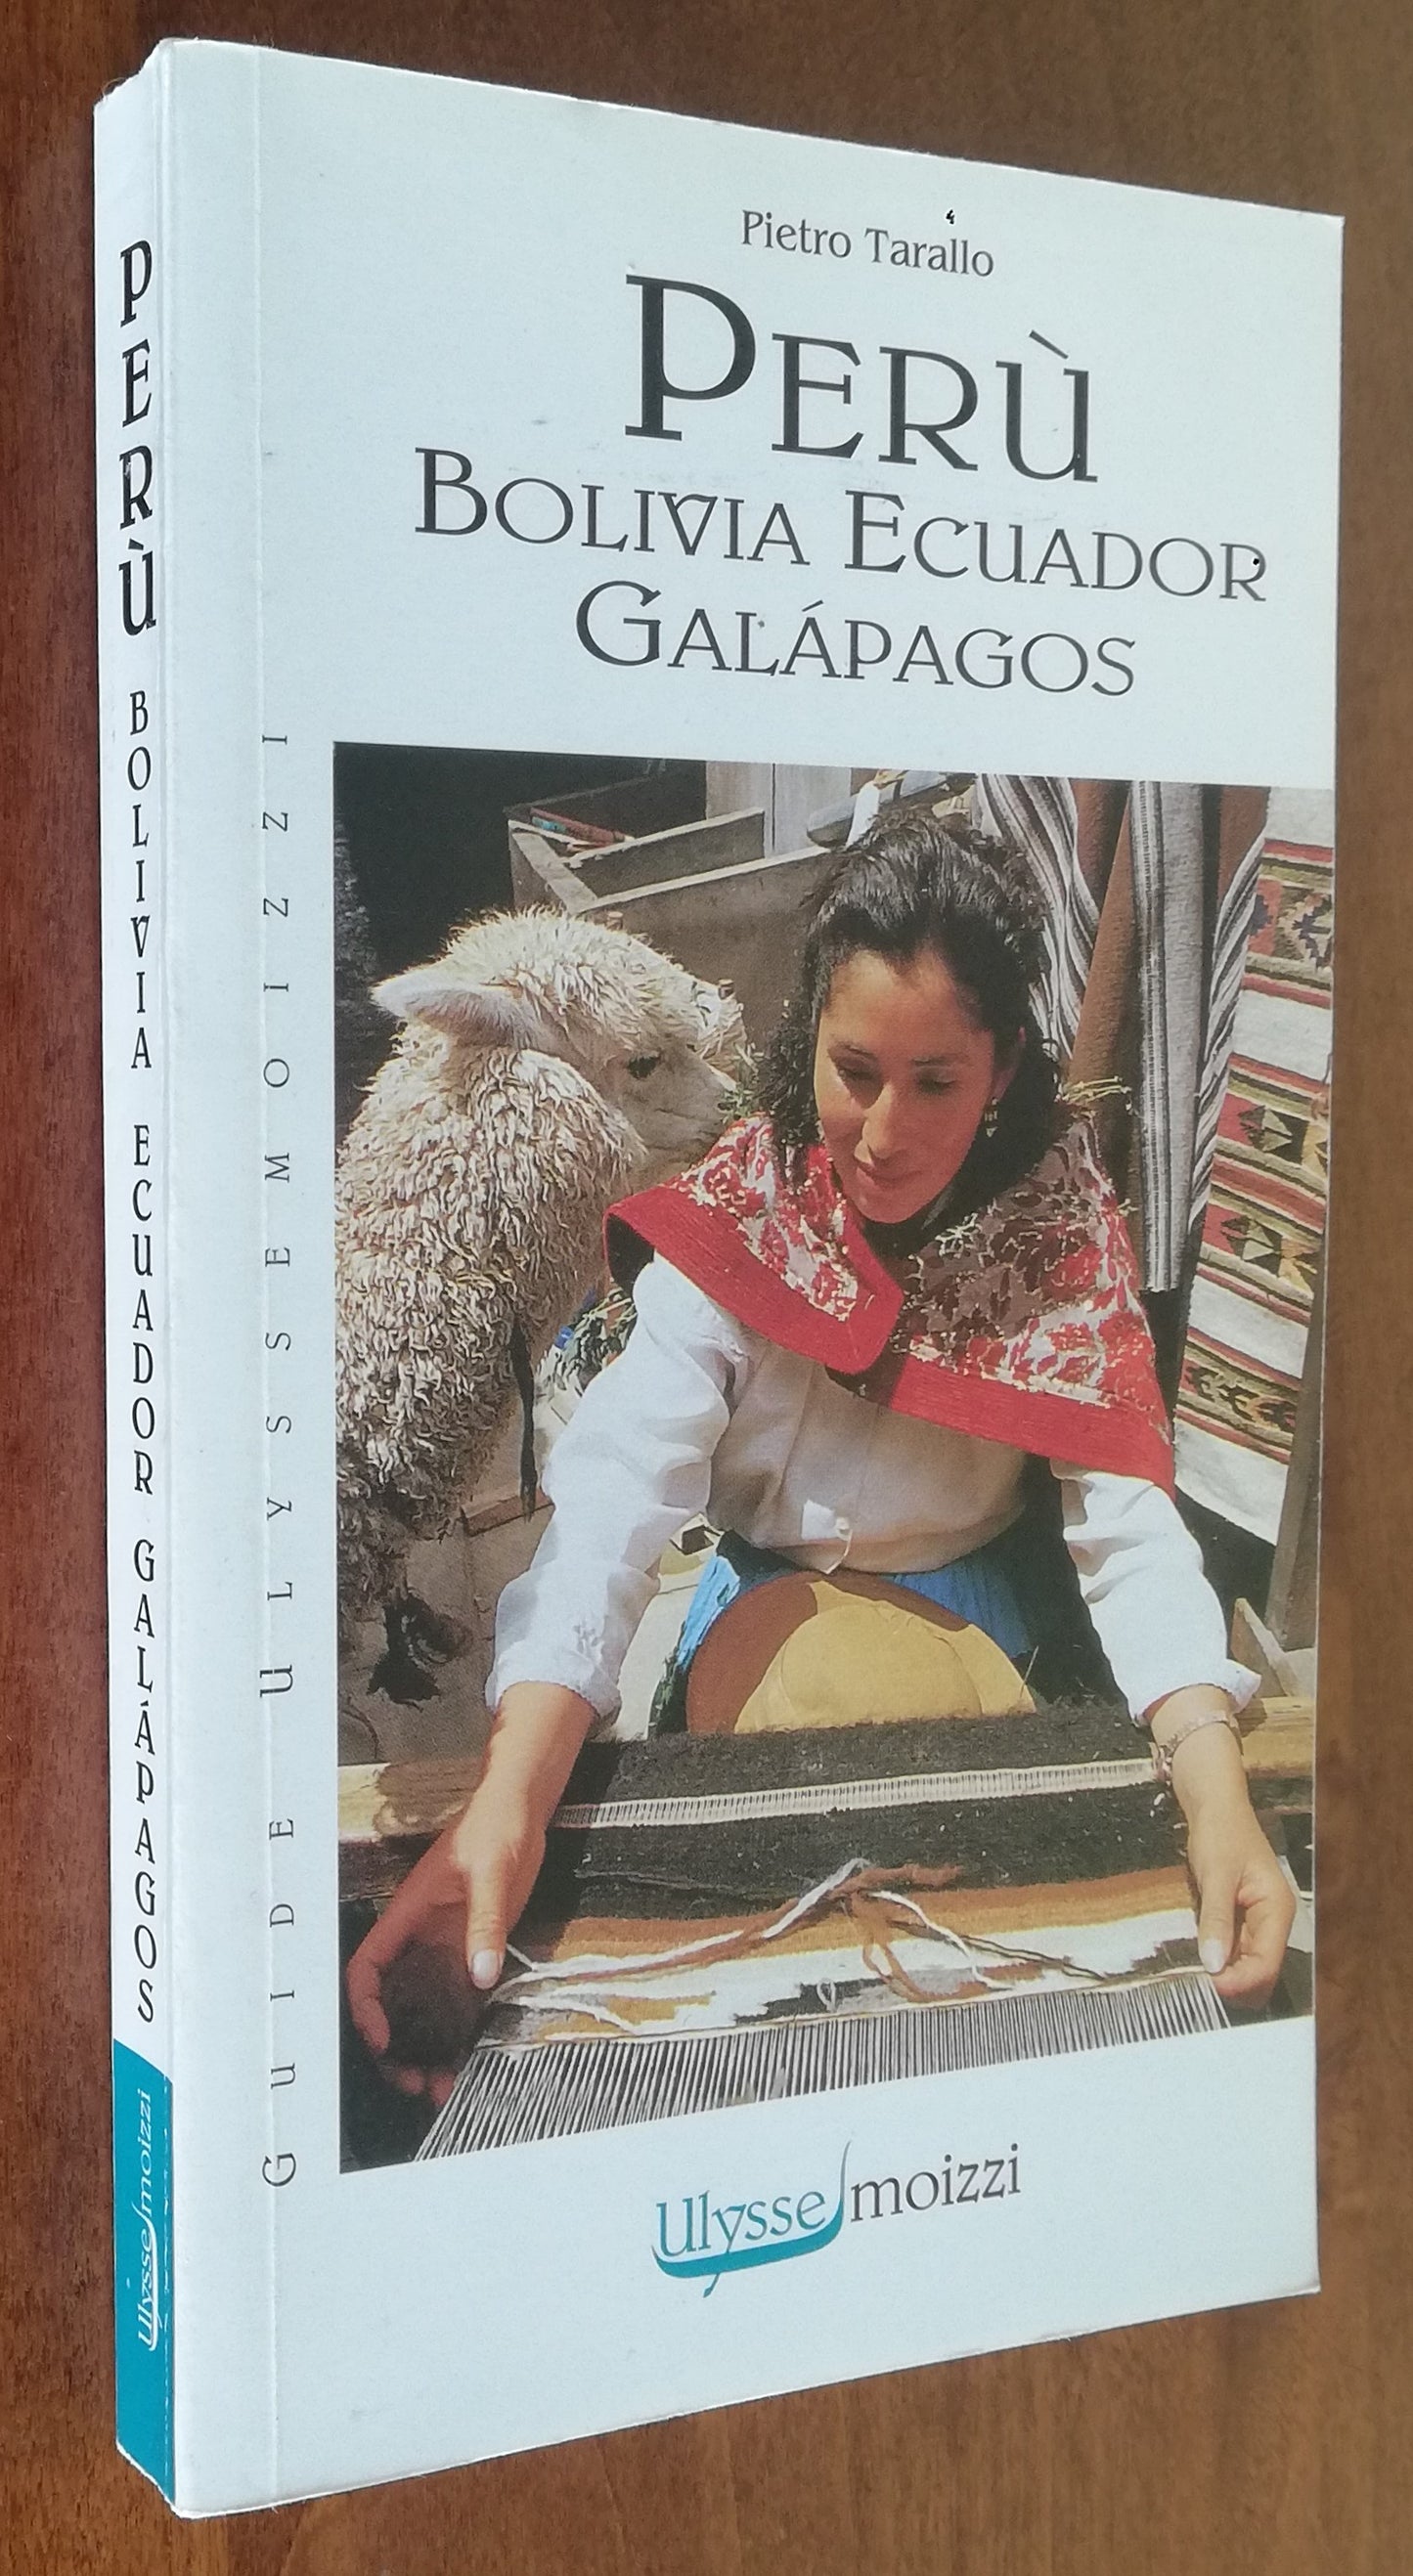 Perù Bolivia Ecuador Galapagos - Moizzi